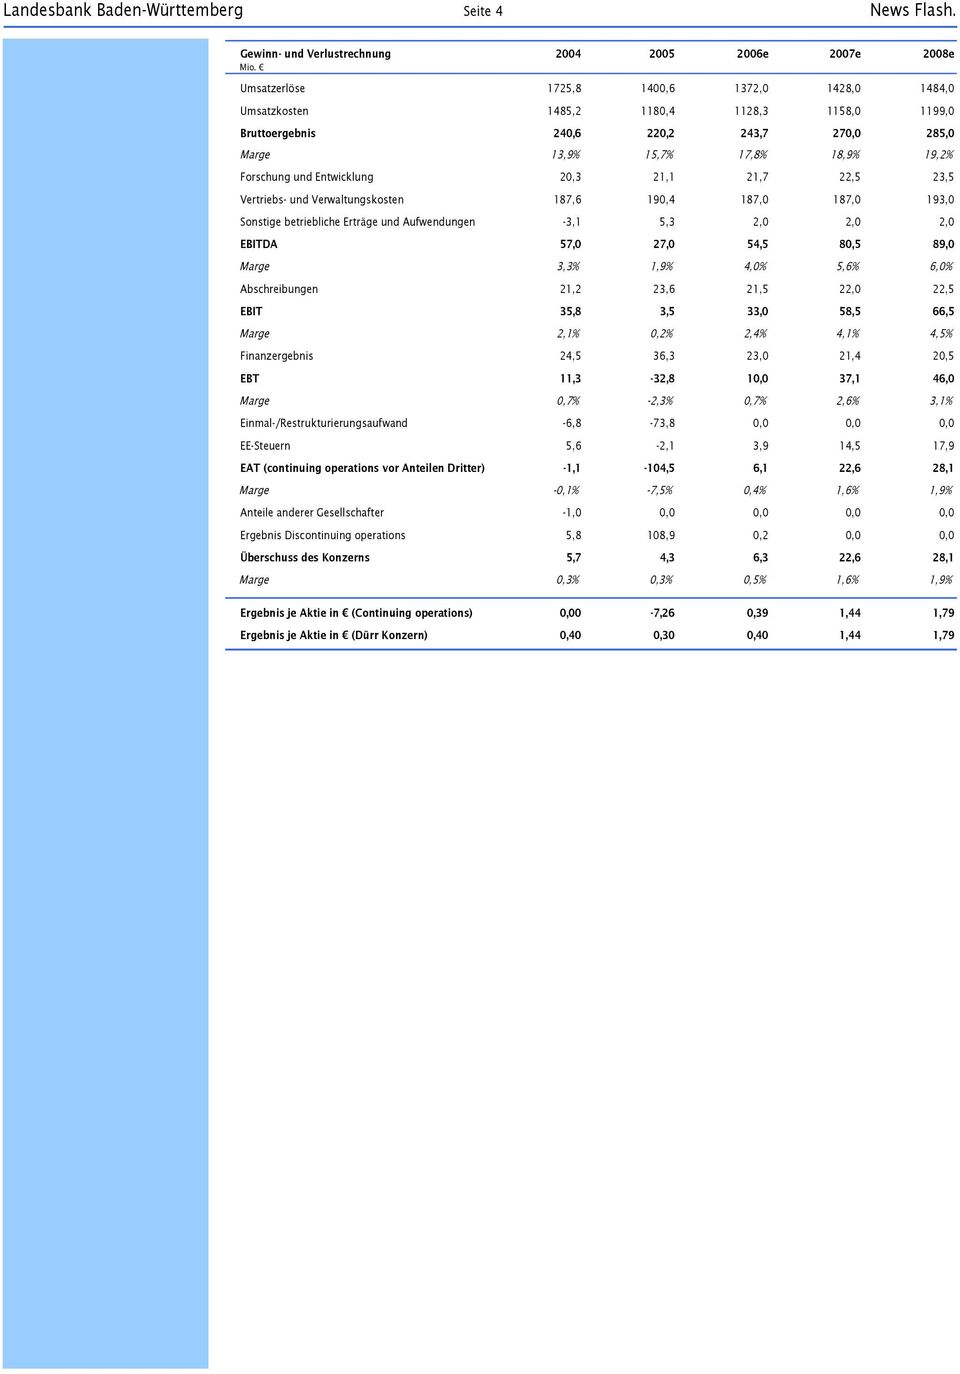 Marge 13,9% 15,7% 17,8% 18,9% 19,2% Forschung und Entwicklung 20,3 21,1 21,7 22,5 23,5 Vertriebs- und Verwaltungskosten 187,6 190,4 187,0 187,0 193,0 Sonstige betriebliche Erträge und Aufwendungen